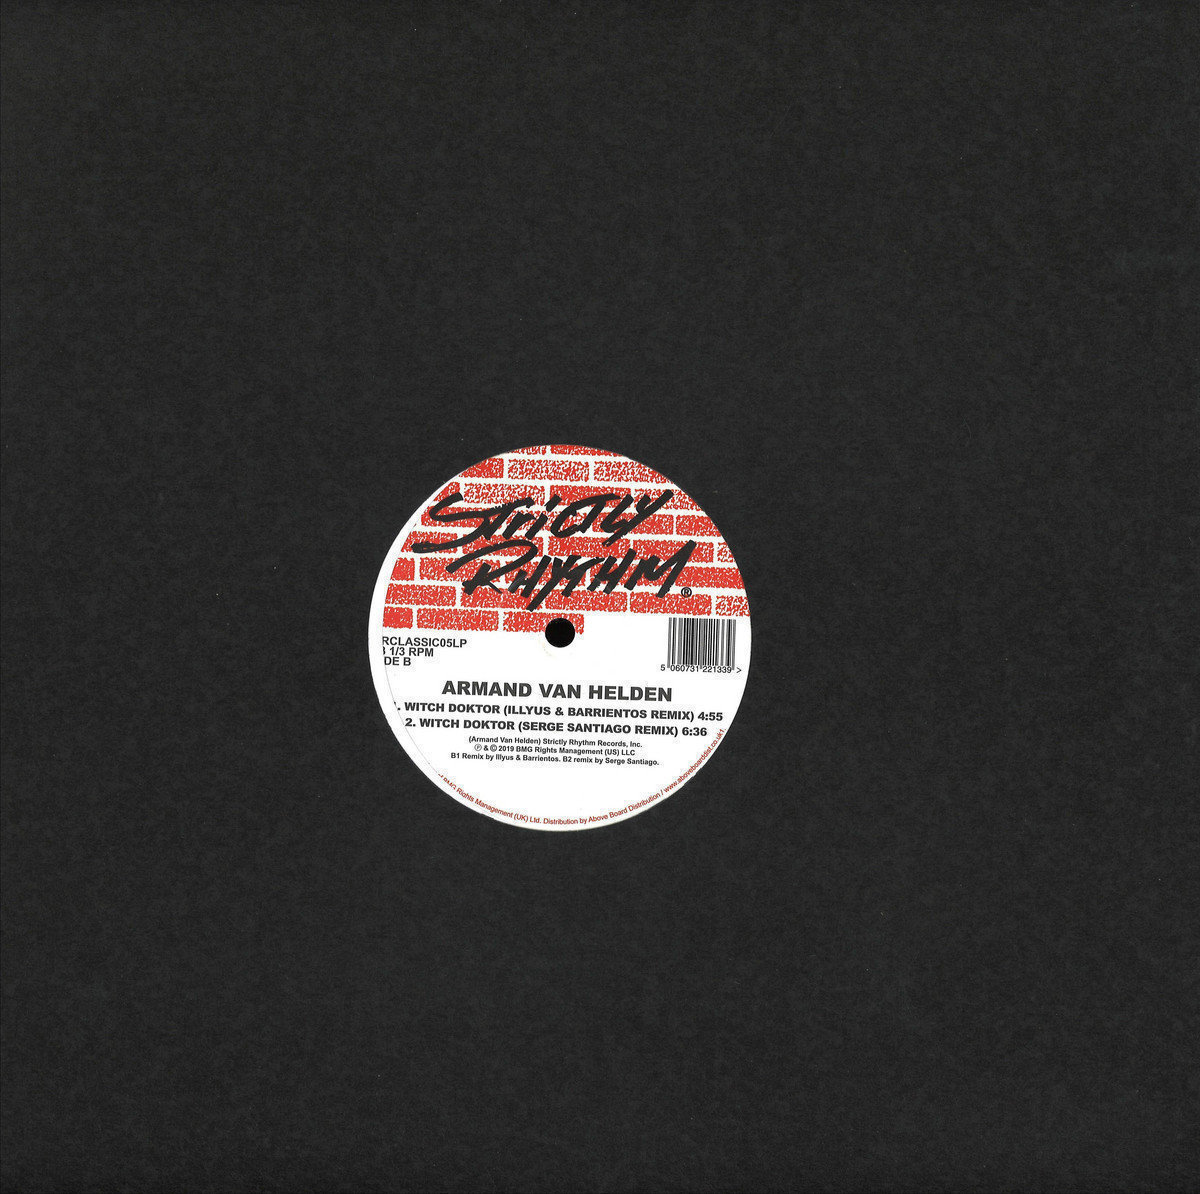 Vinylskiva Armand van Helden - Witch Doktor Remixes (LP)